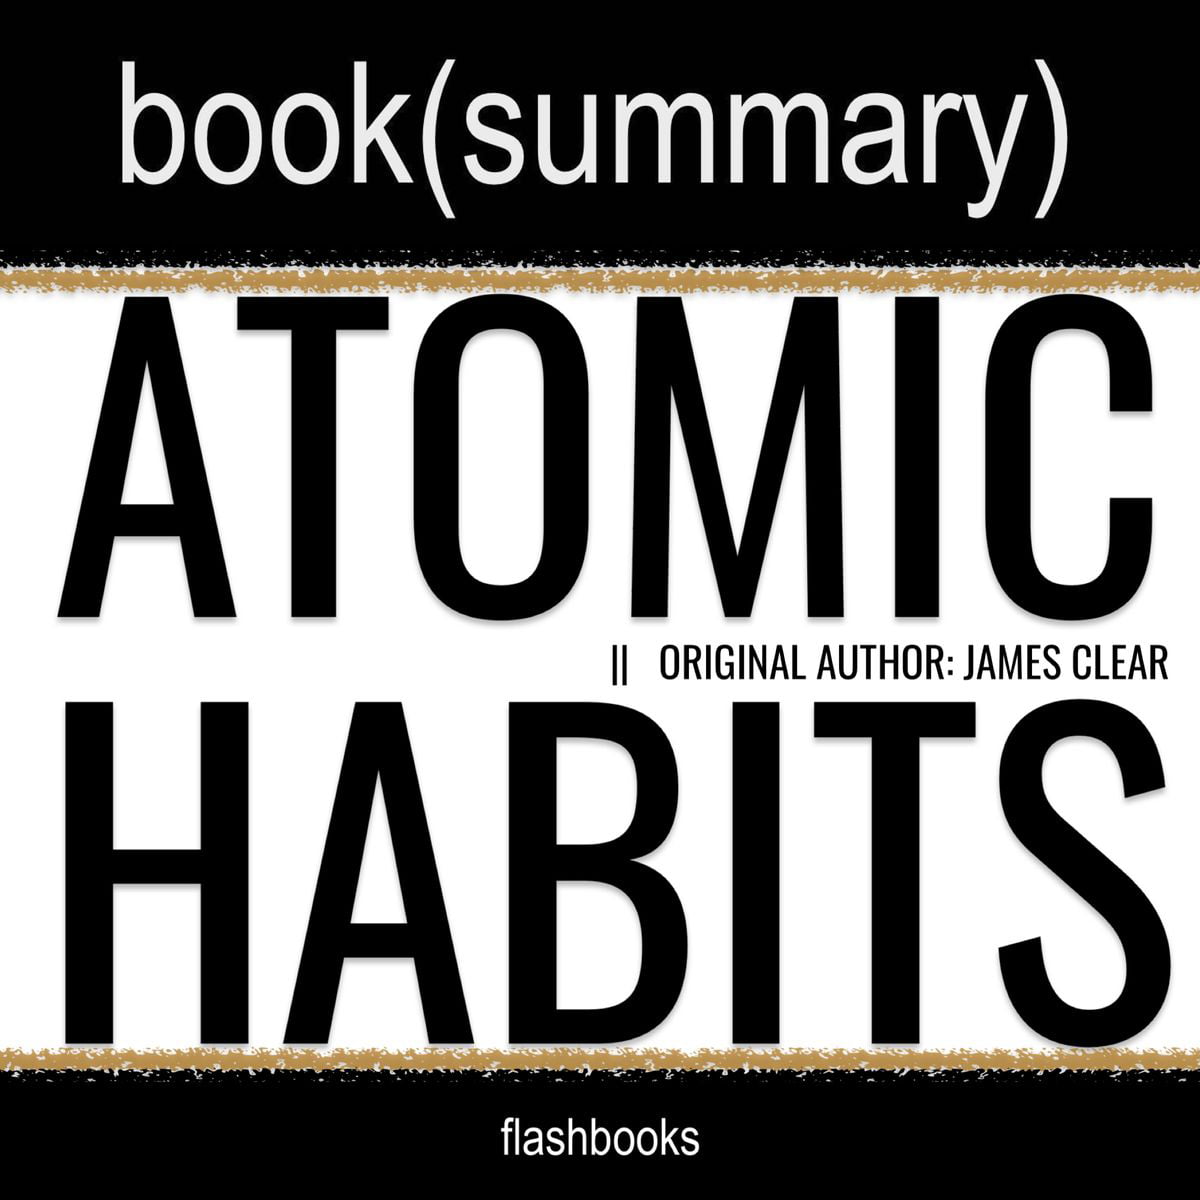 atomic habits audiobook in tamil